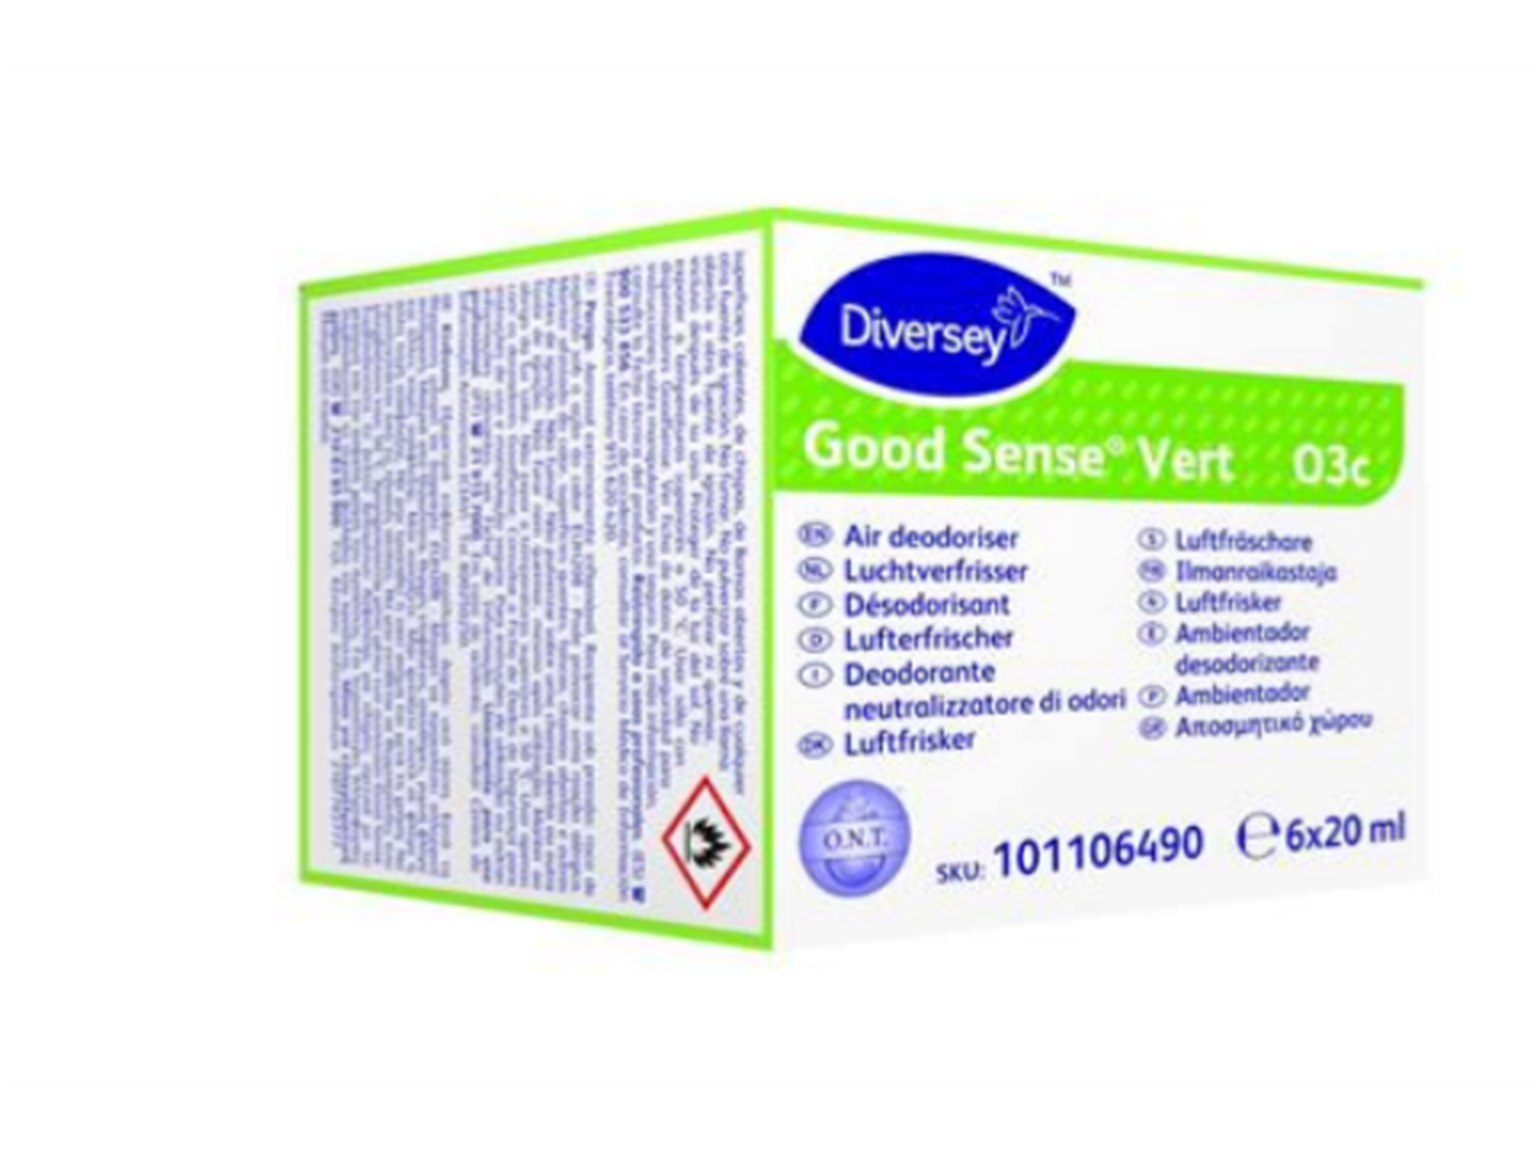 DIVERSEY DUFTPATRONEN  Good Sense  Vert, 2 x 6 x 20 ml